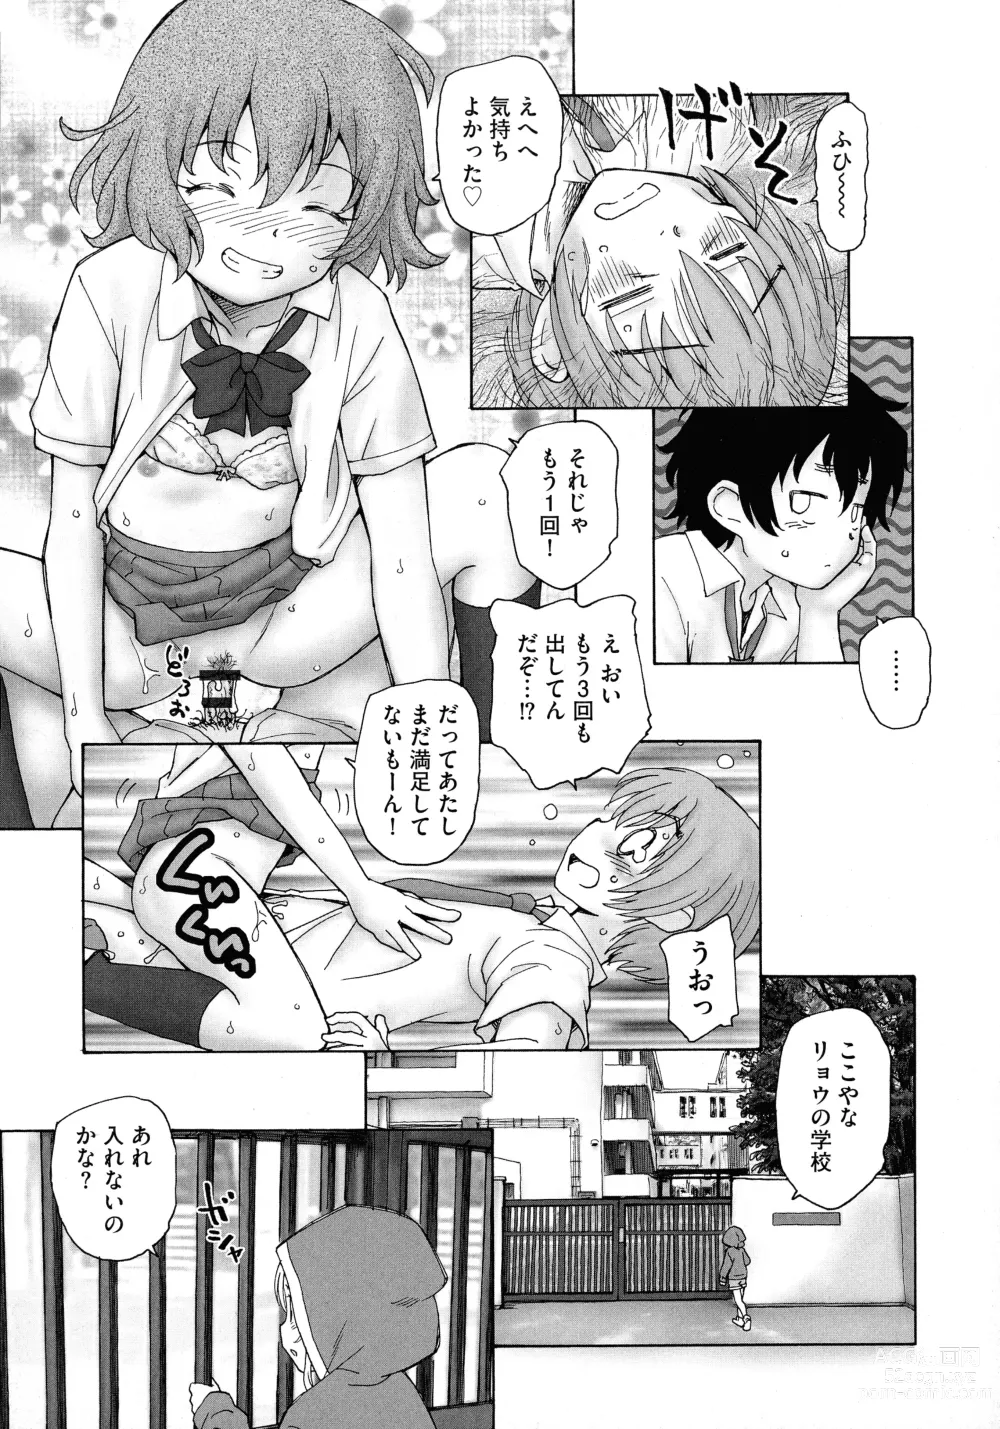 Page 189 of manga Mayoi no Machi no Akazukin Jo